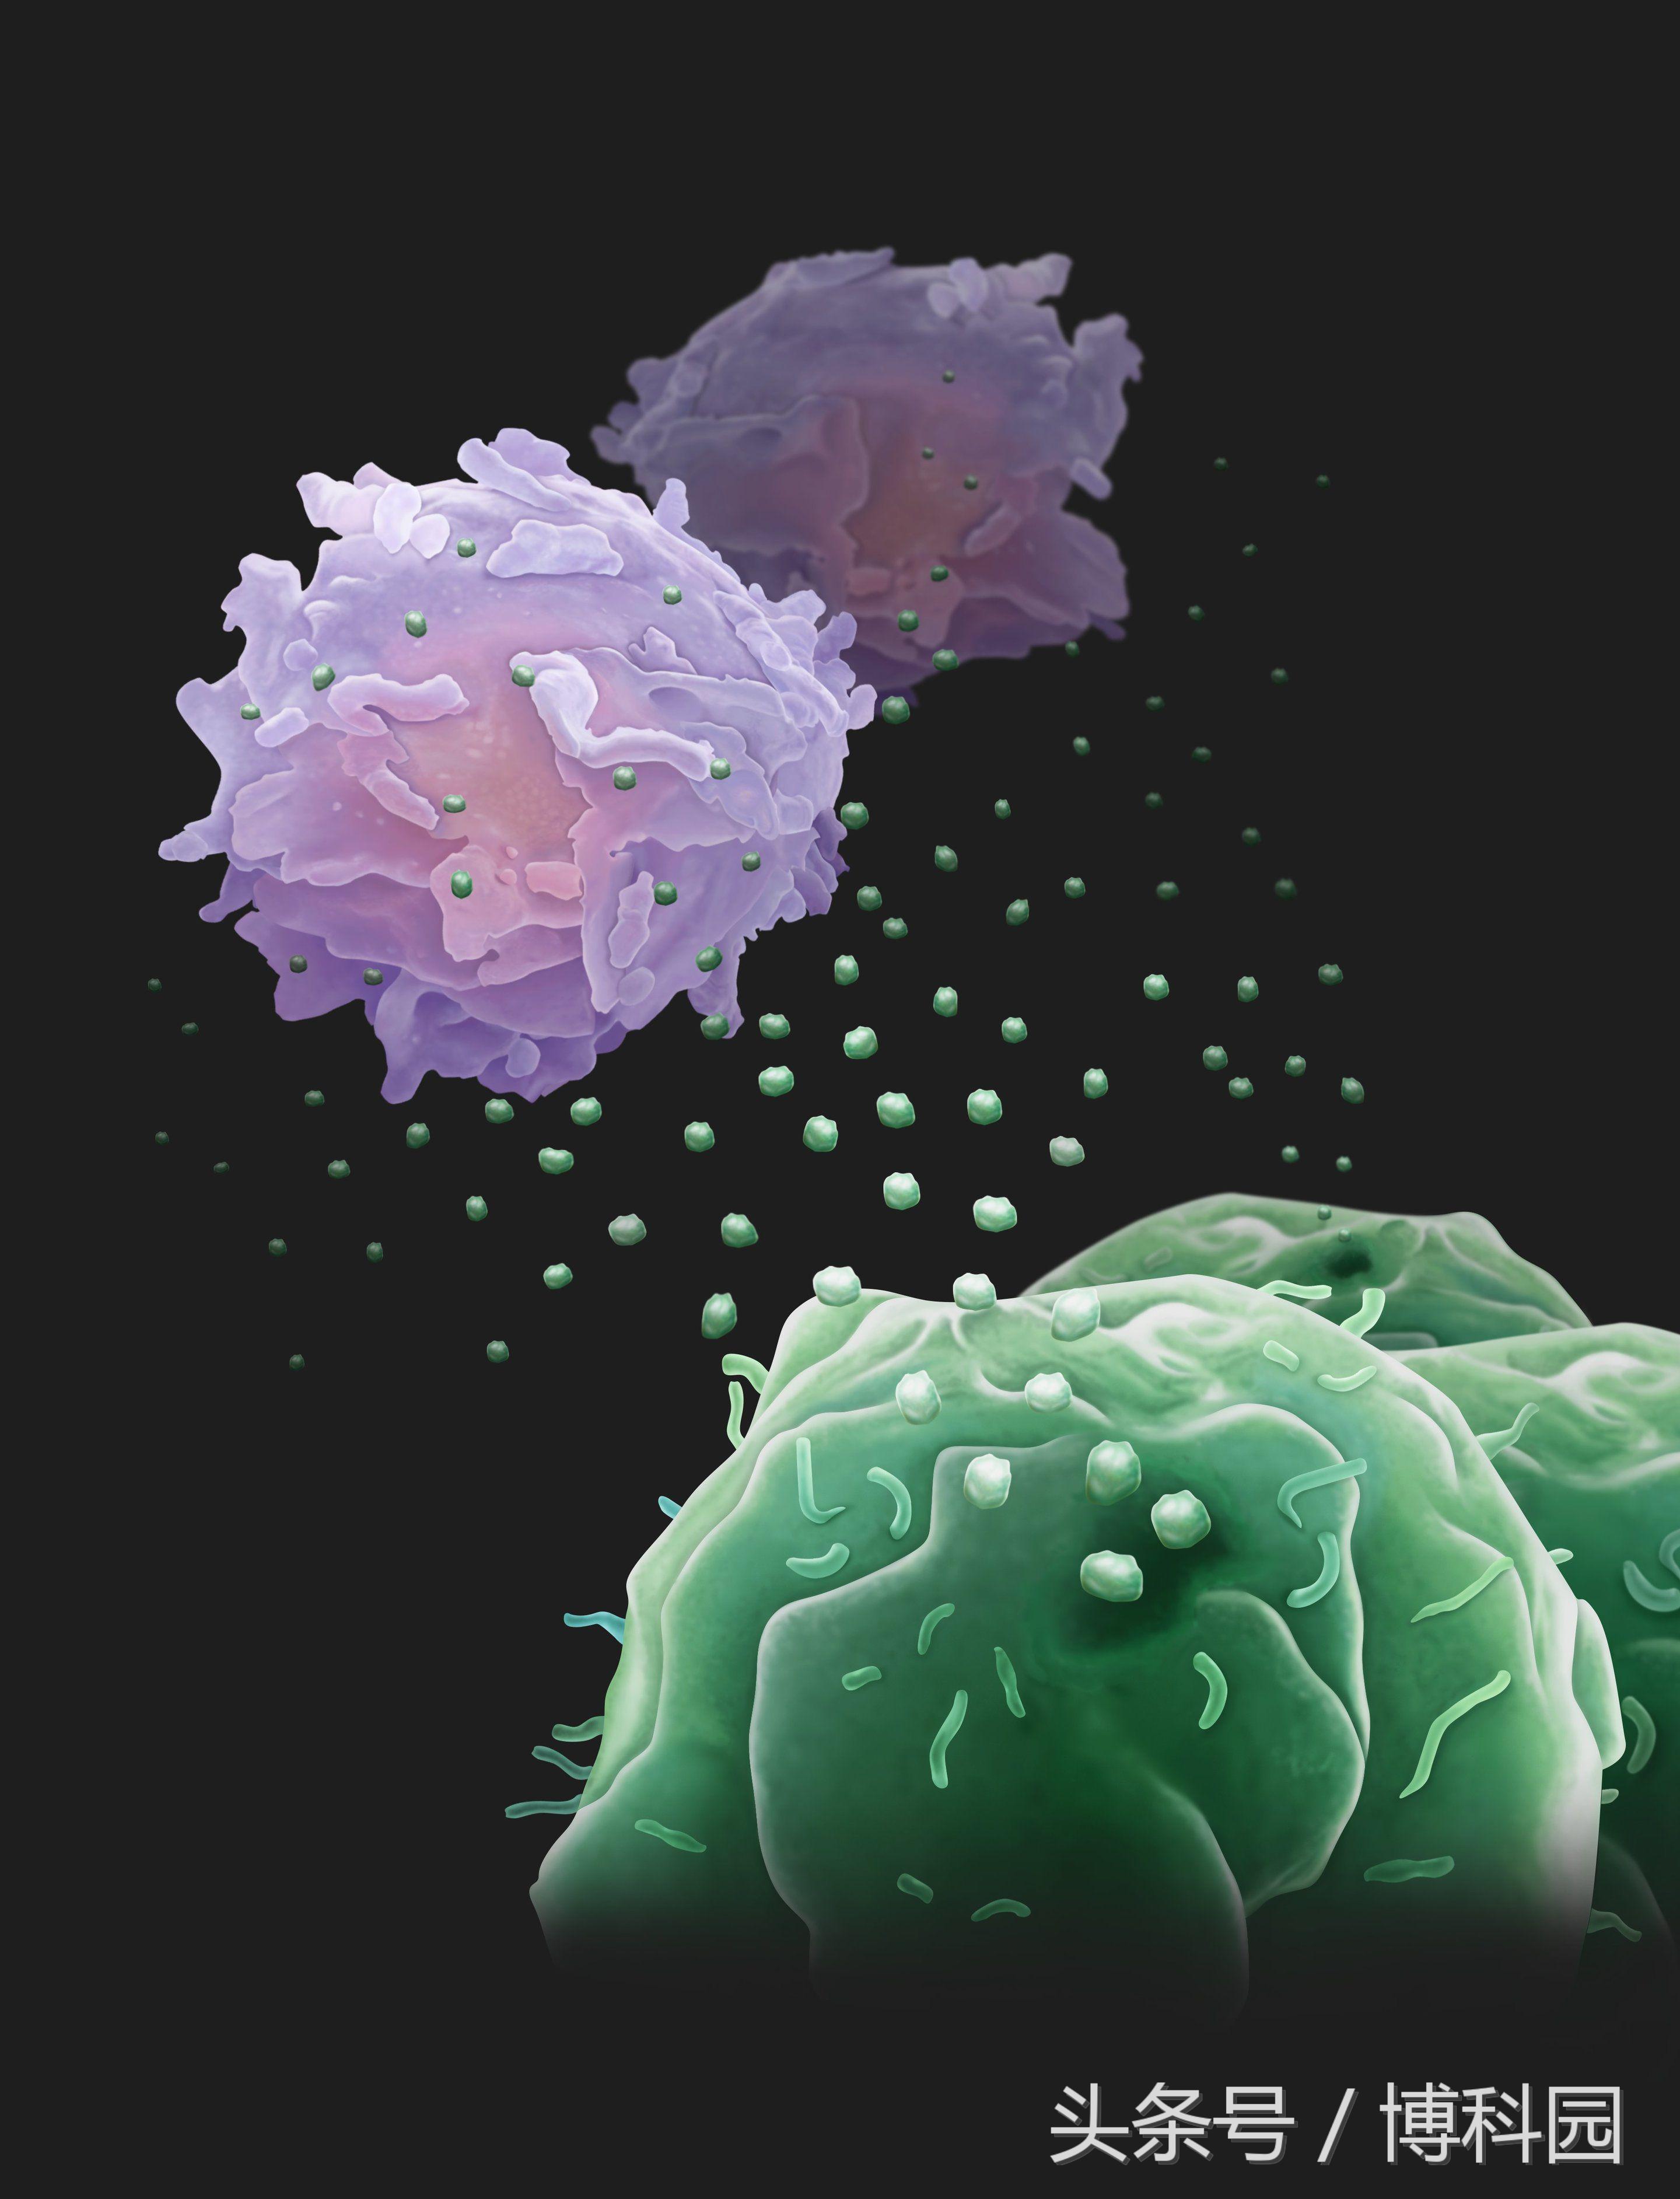 癌细胞会从远处发射“无人机”来对抗免疫系统